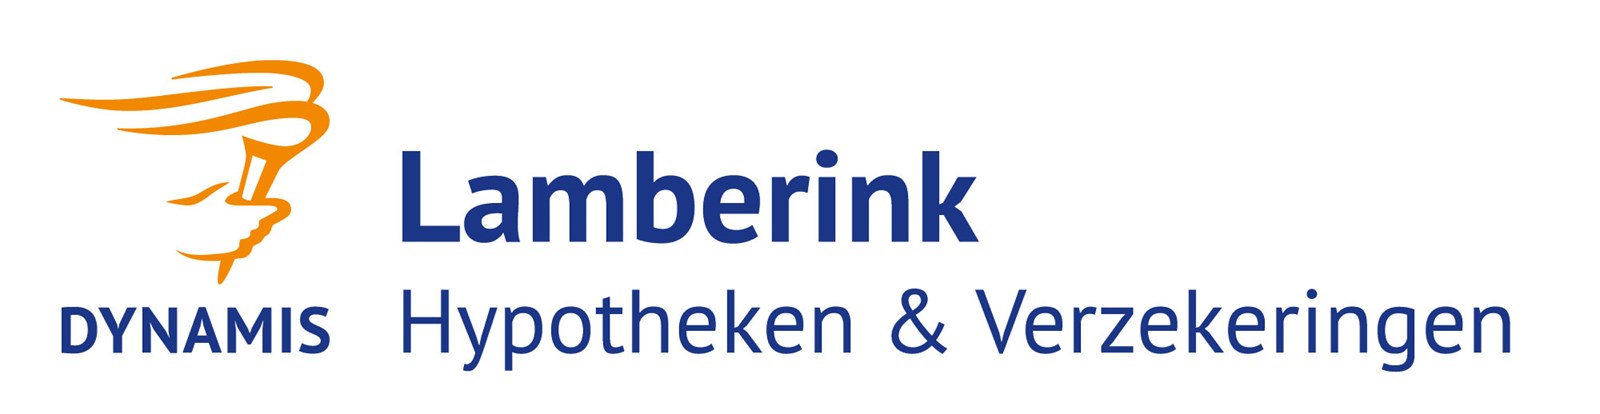 Logo van Lamberink Hypotheken en Verzekeringen